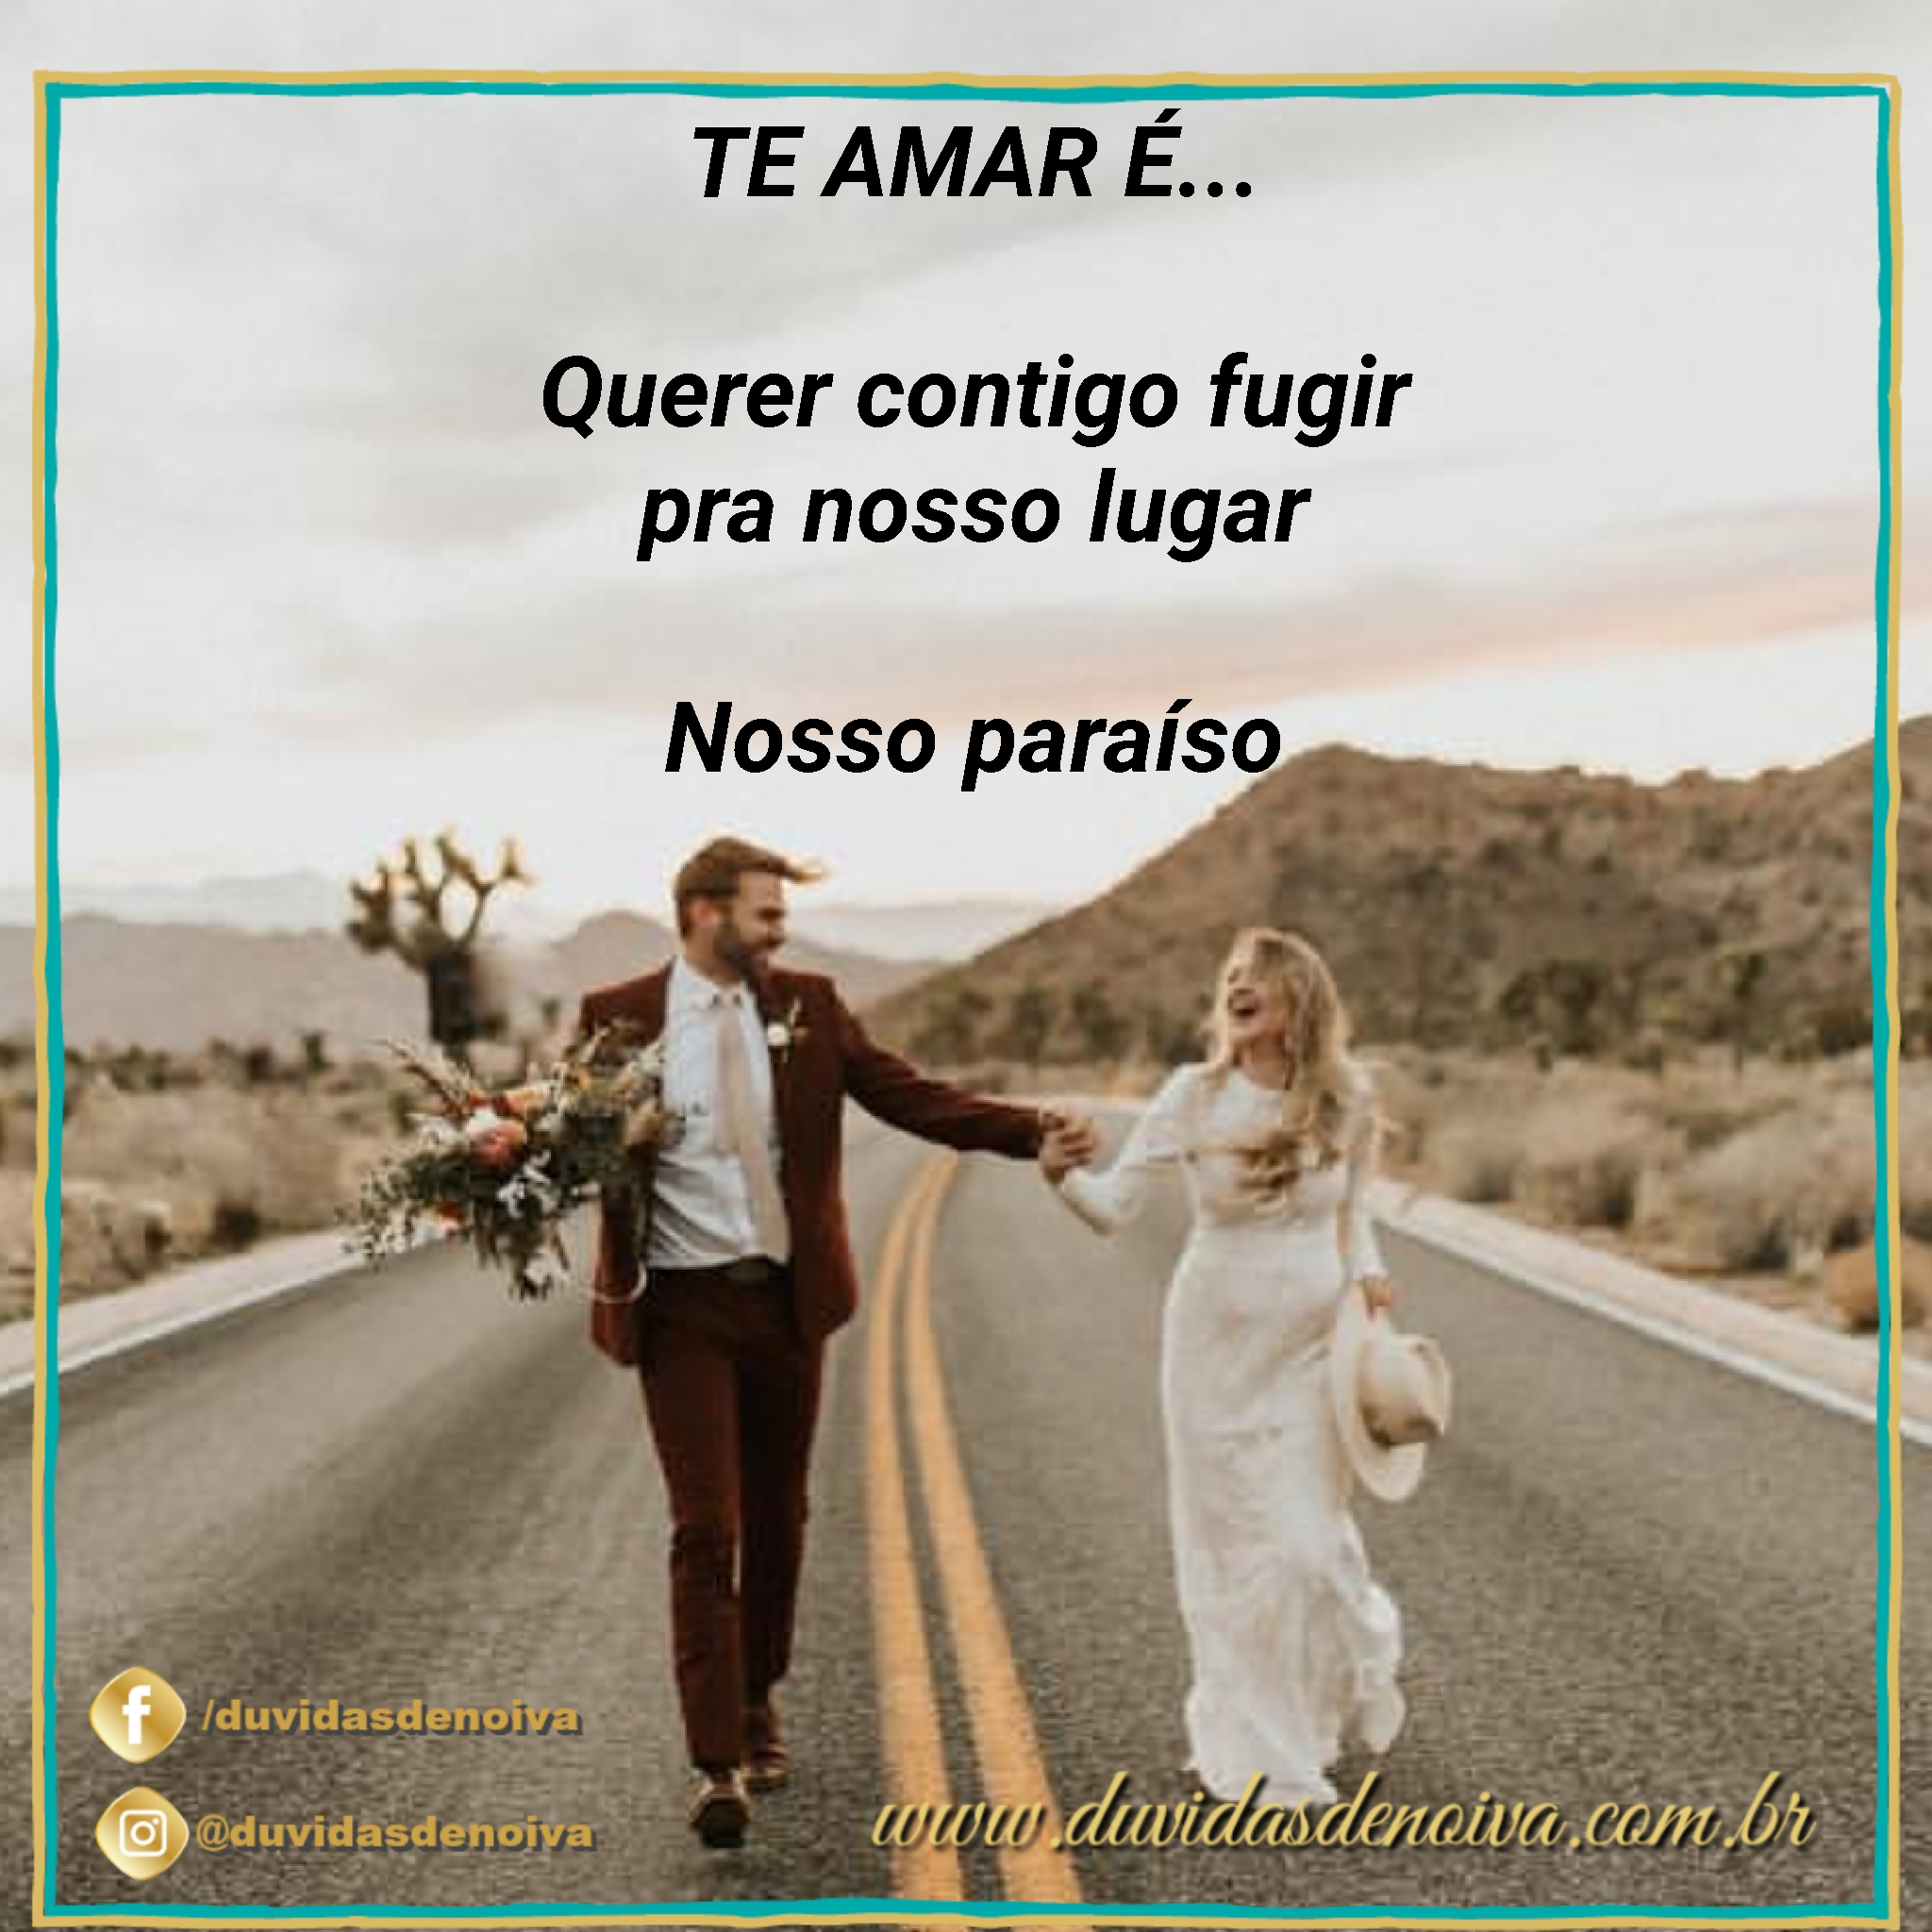 salt 20190315 111618 235 - Frases de Amor - Te Amar é...